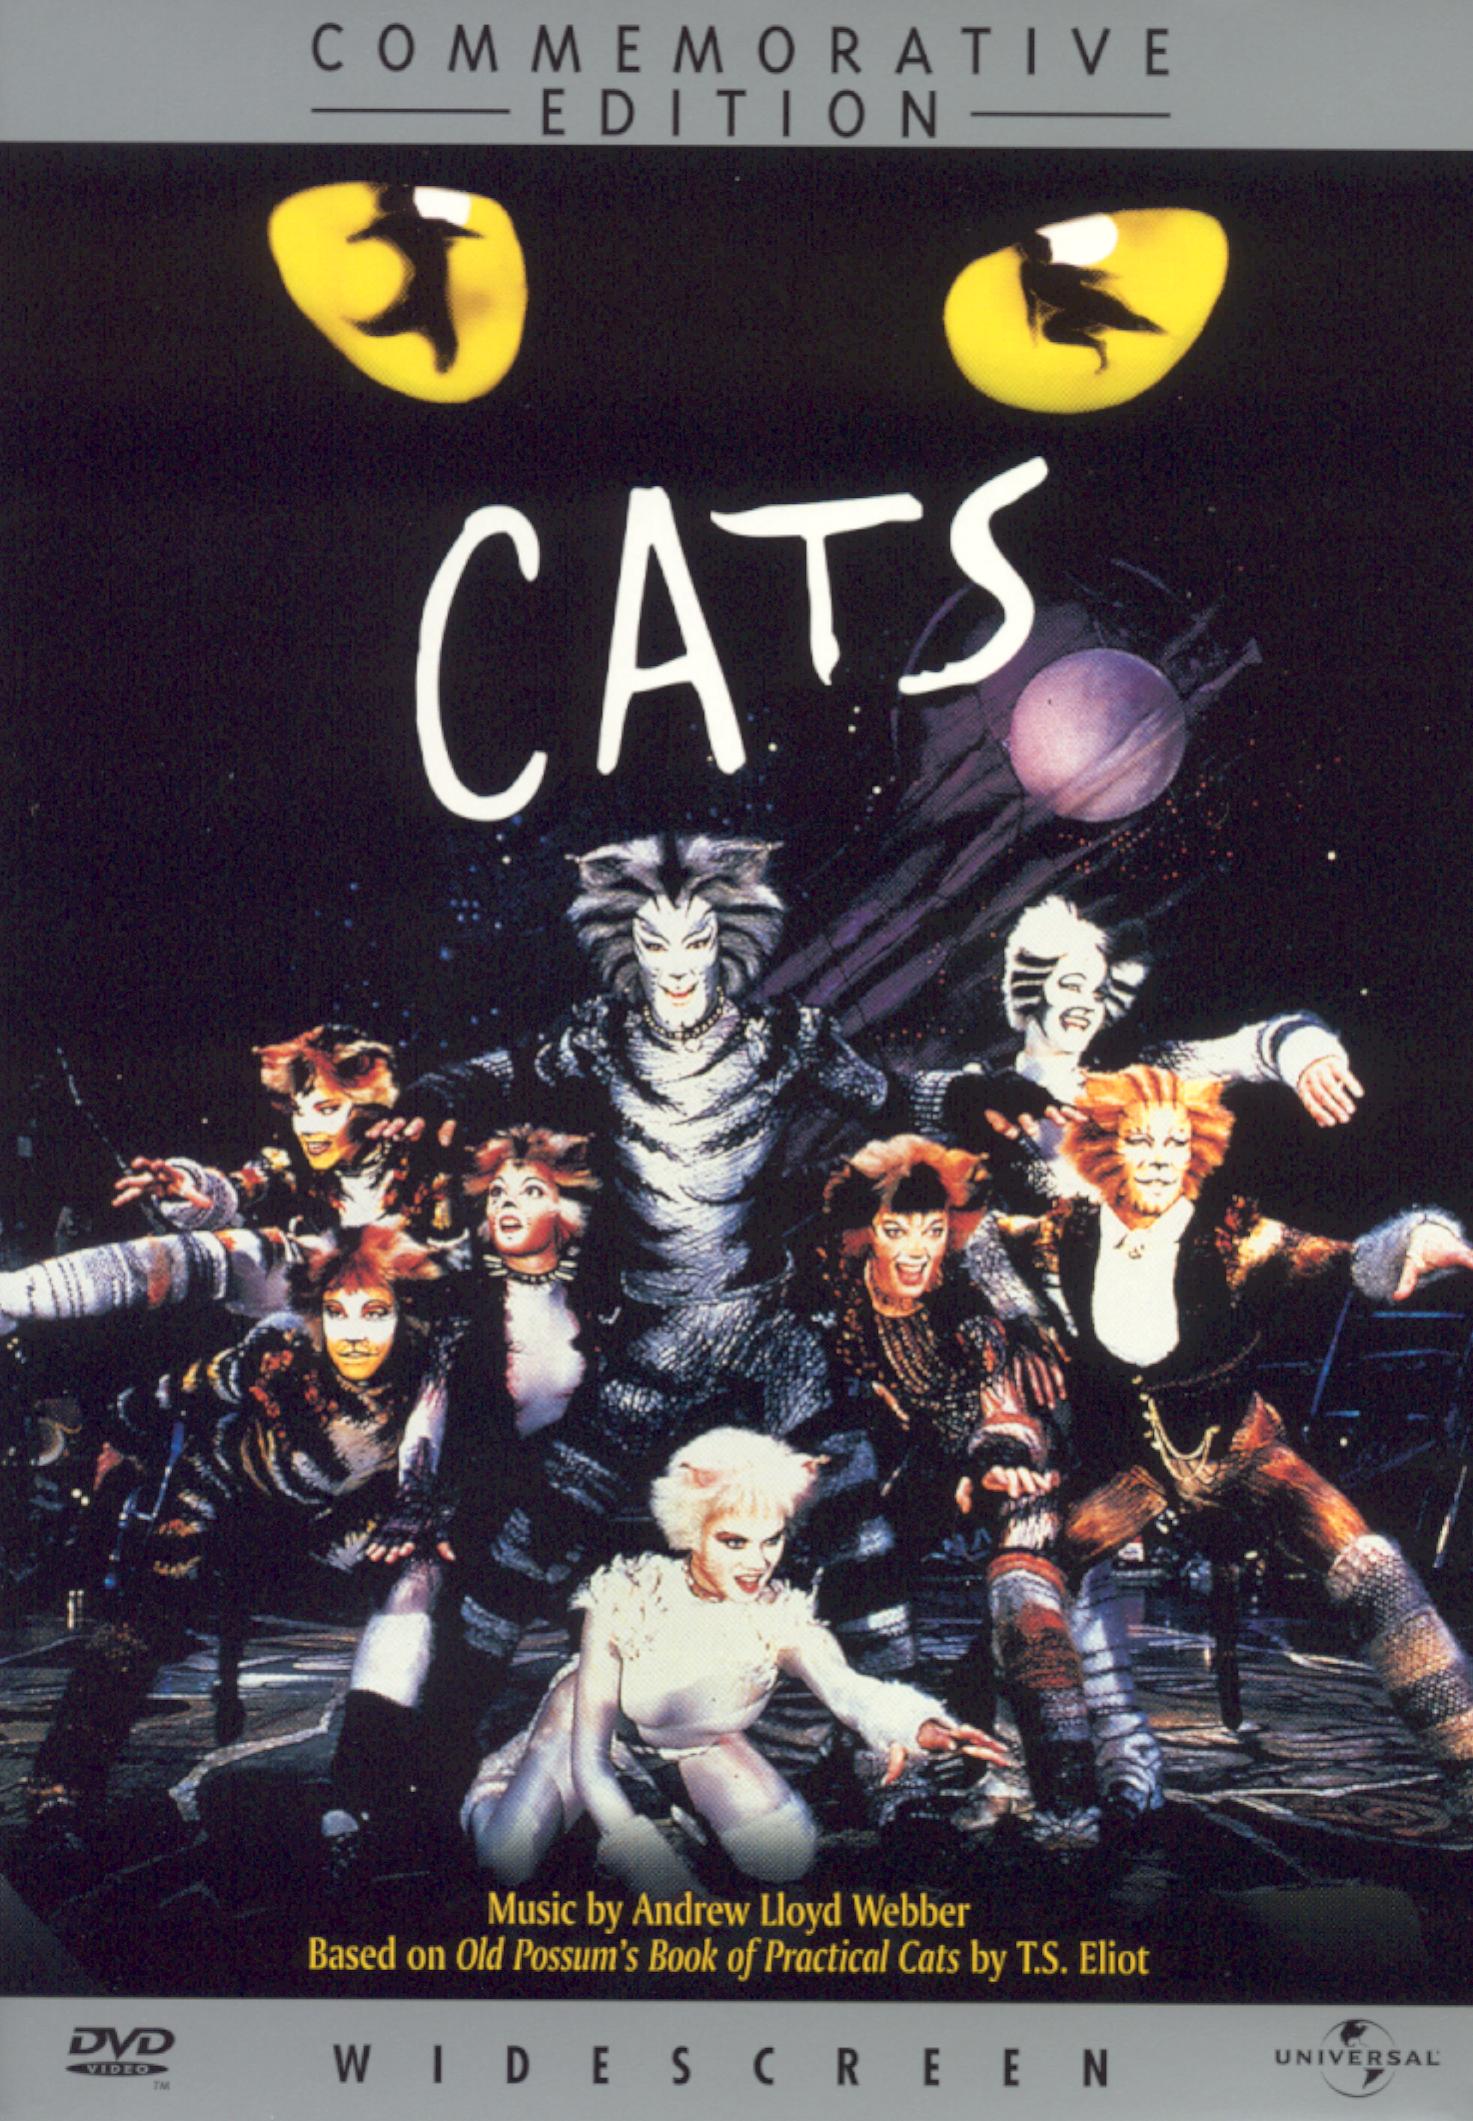 Cats [Commemorative Edition] [DVD] [1998]